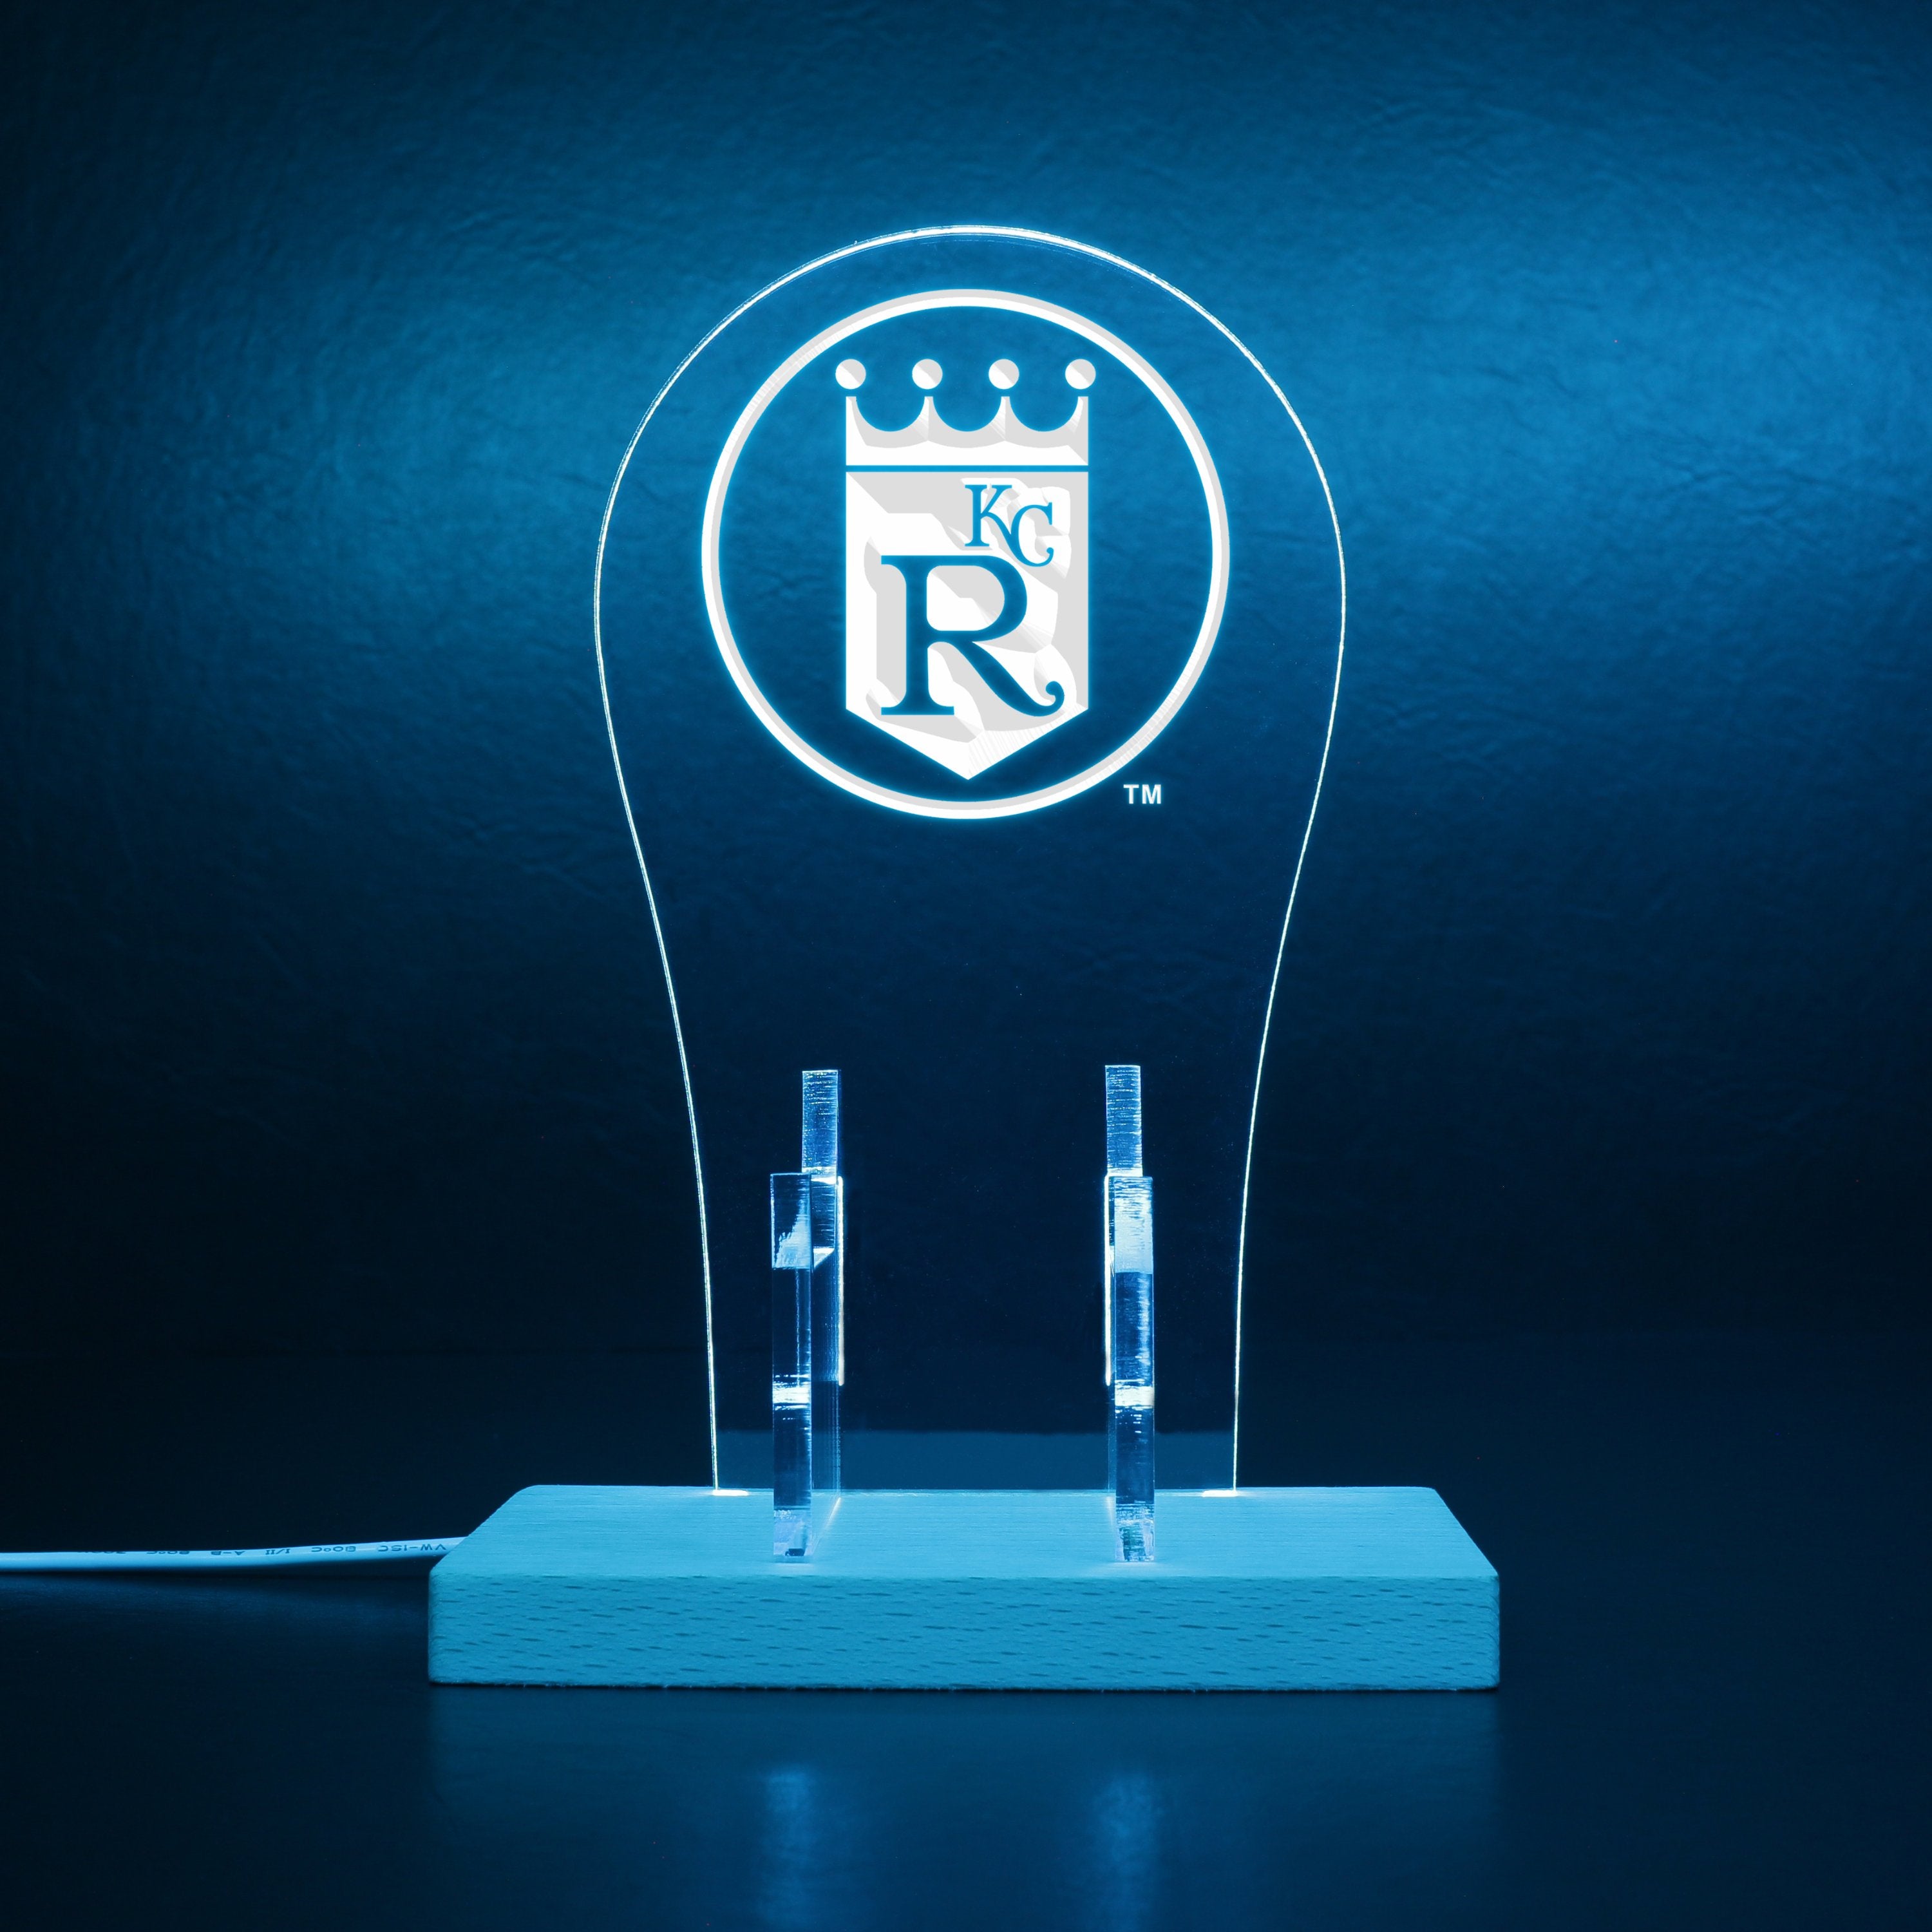 Kansas City Royals Alternate Logos 1993 - 2001 RGB LED Gaming Headset Controller Stand